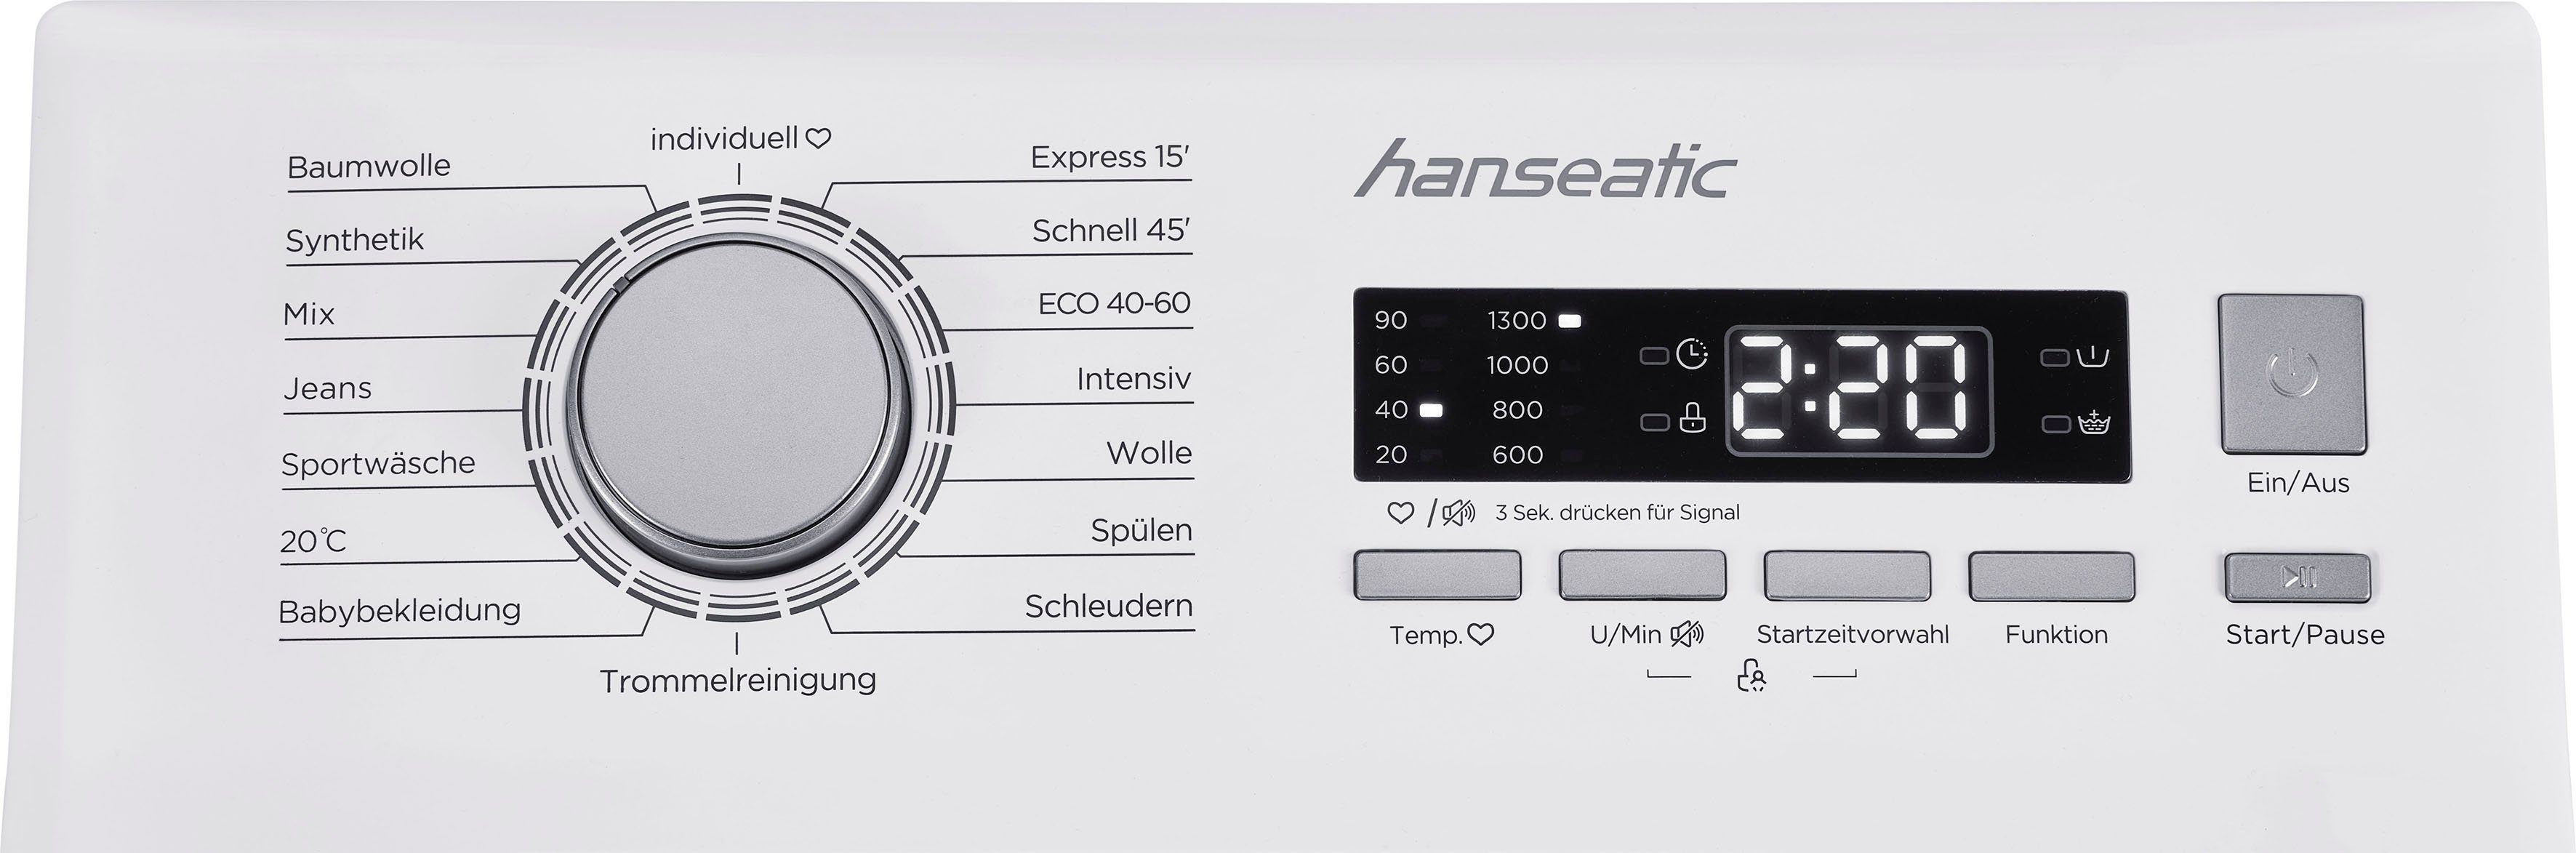 Hanseatic Waschmaschine Toplader HTW8013C, 8 U/min, 1300 kg, Überlaufschutzsystem Mengenautomatik